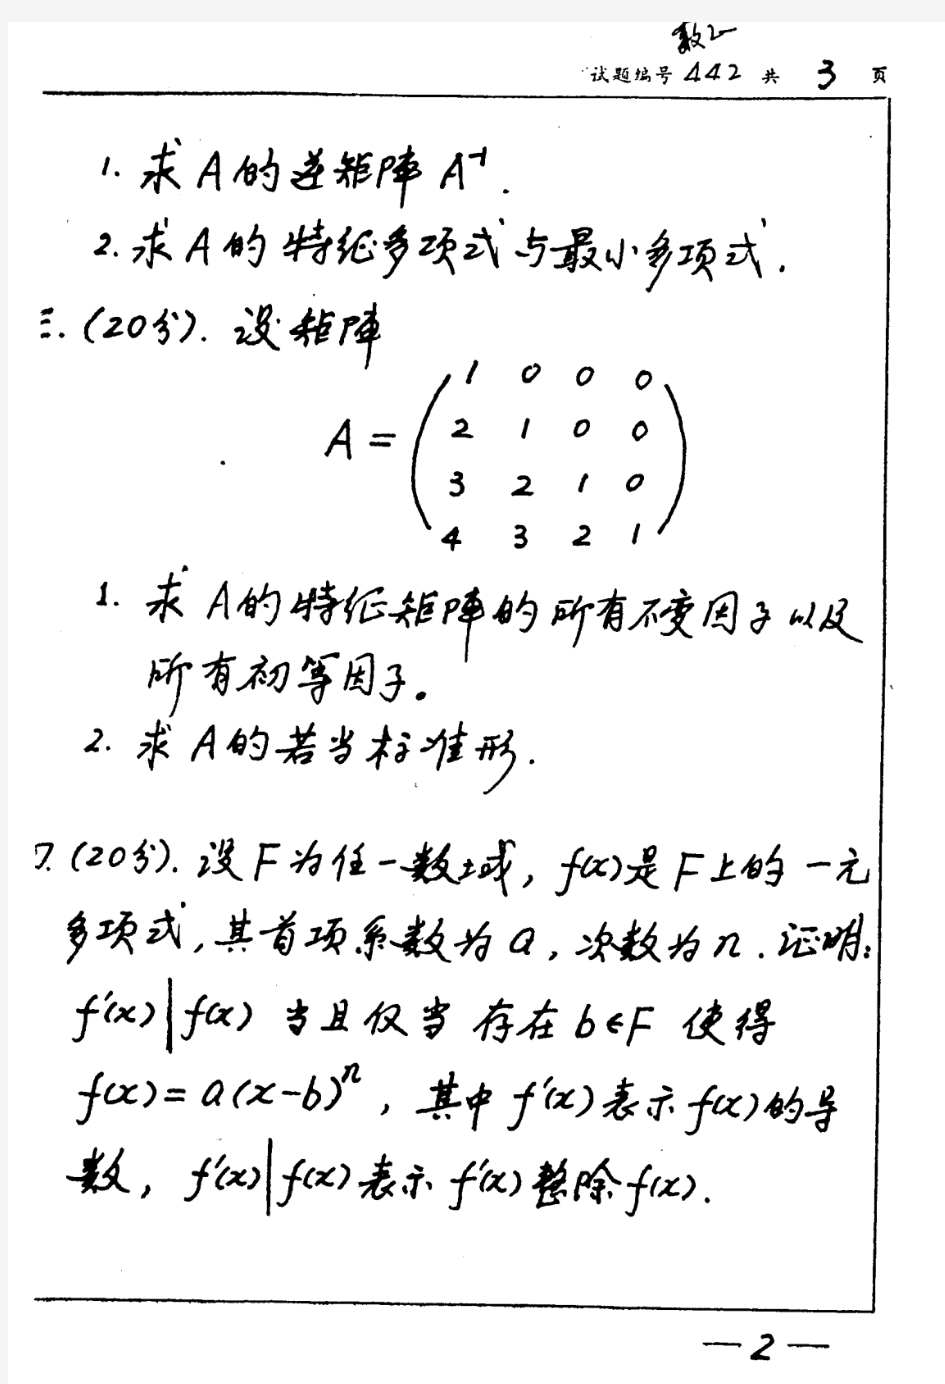 南京大学南大 1997年高等代数 考研真题及答案解析